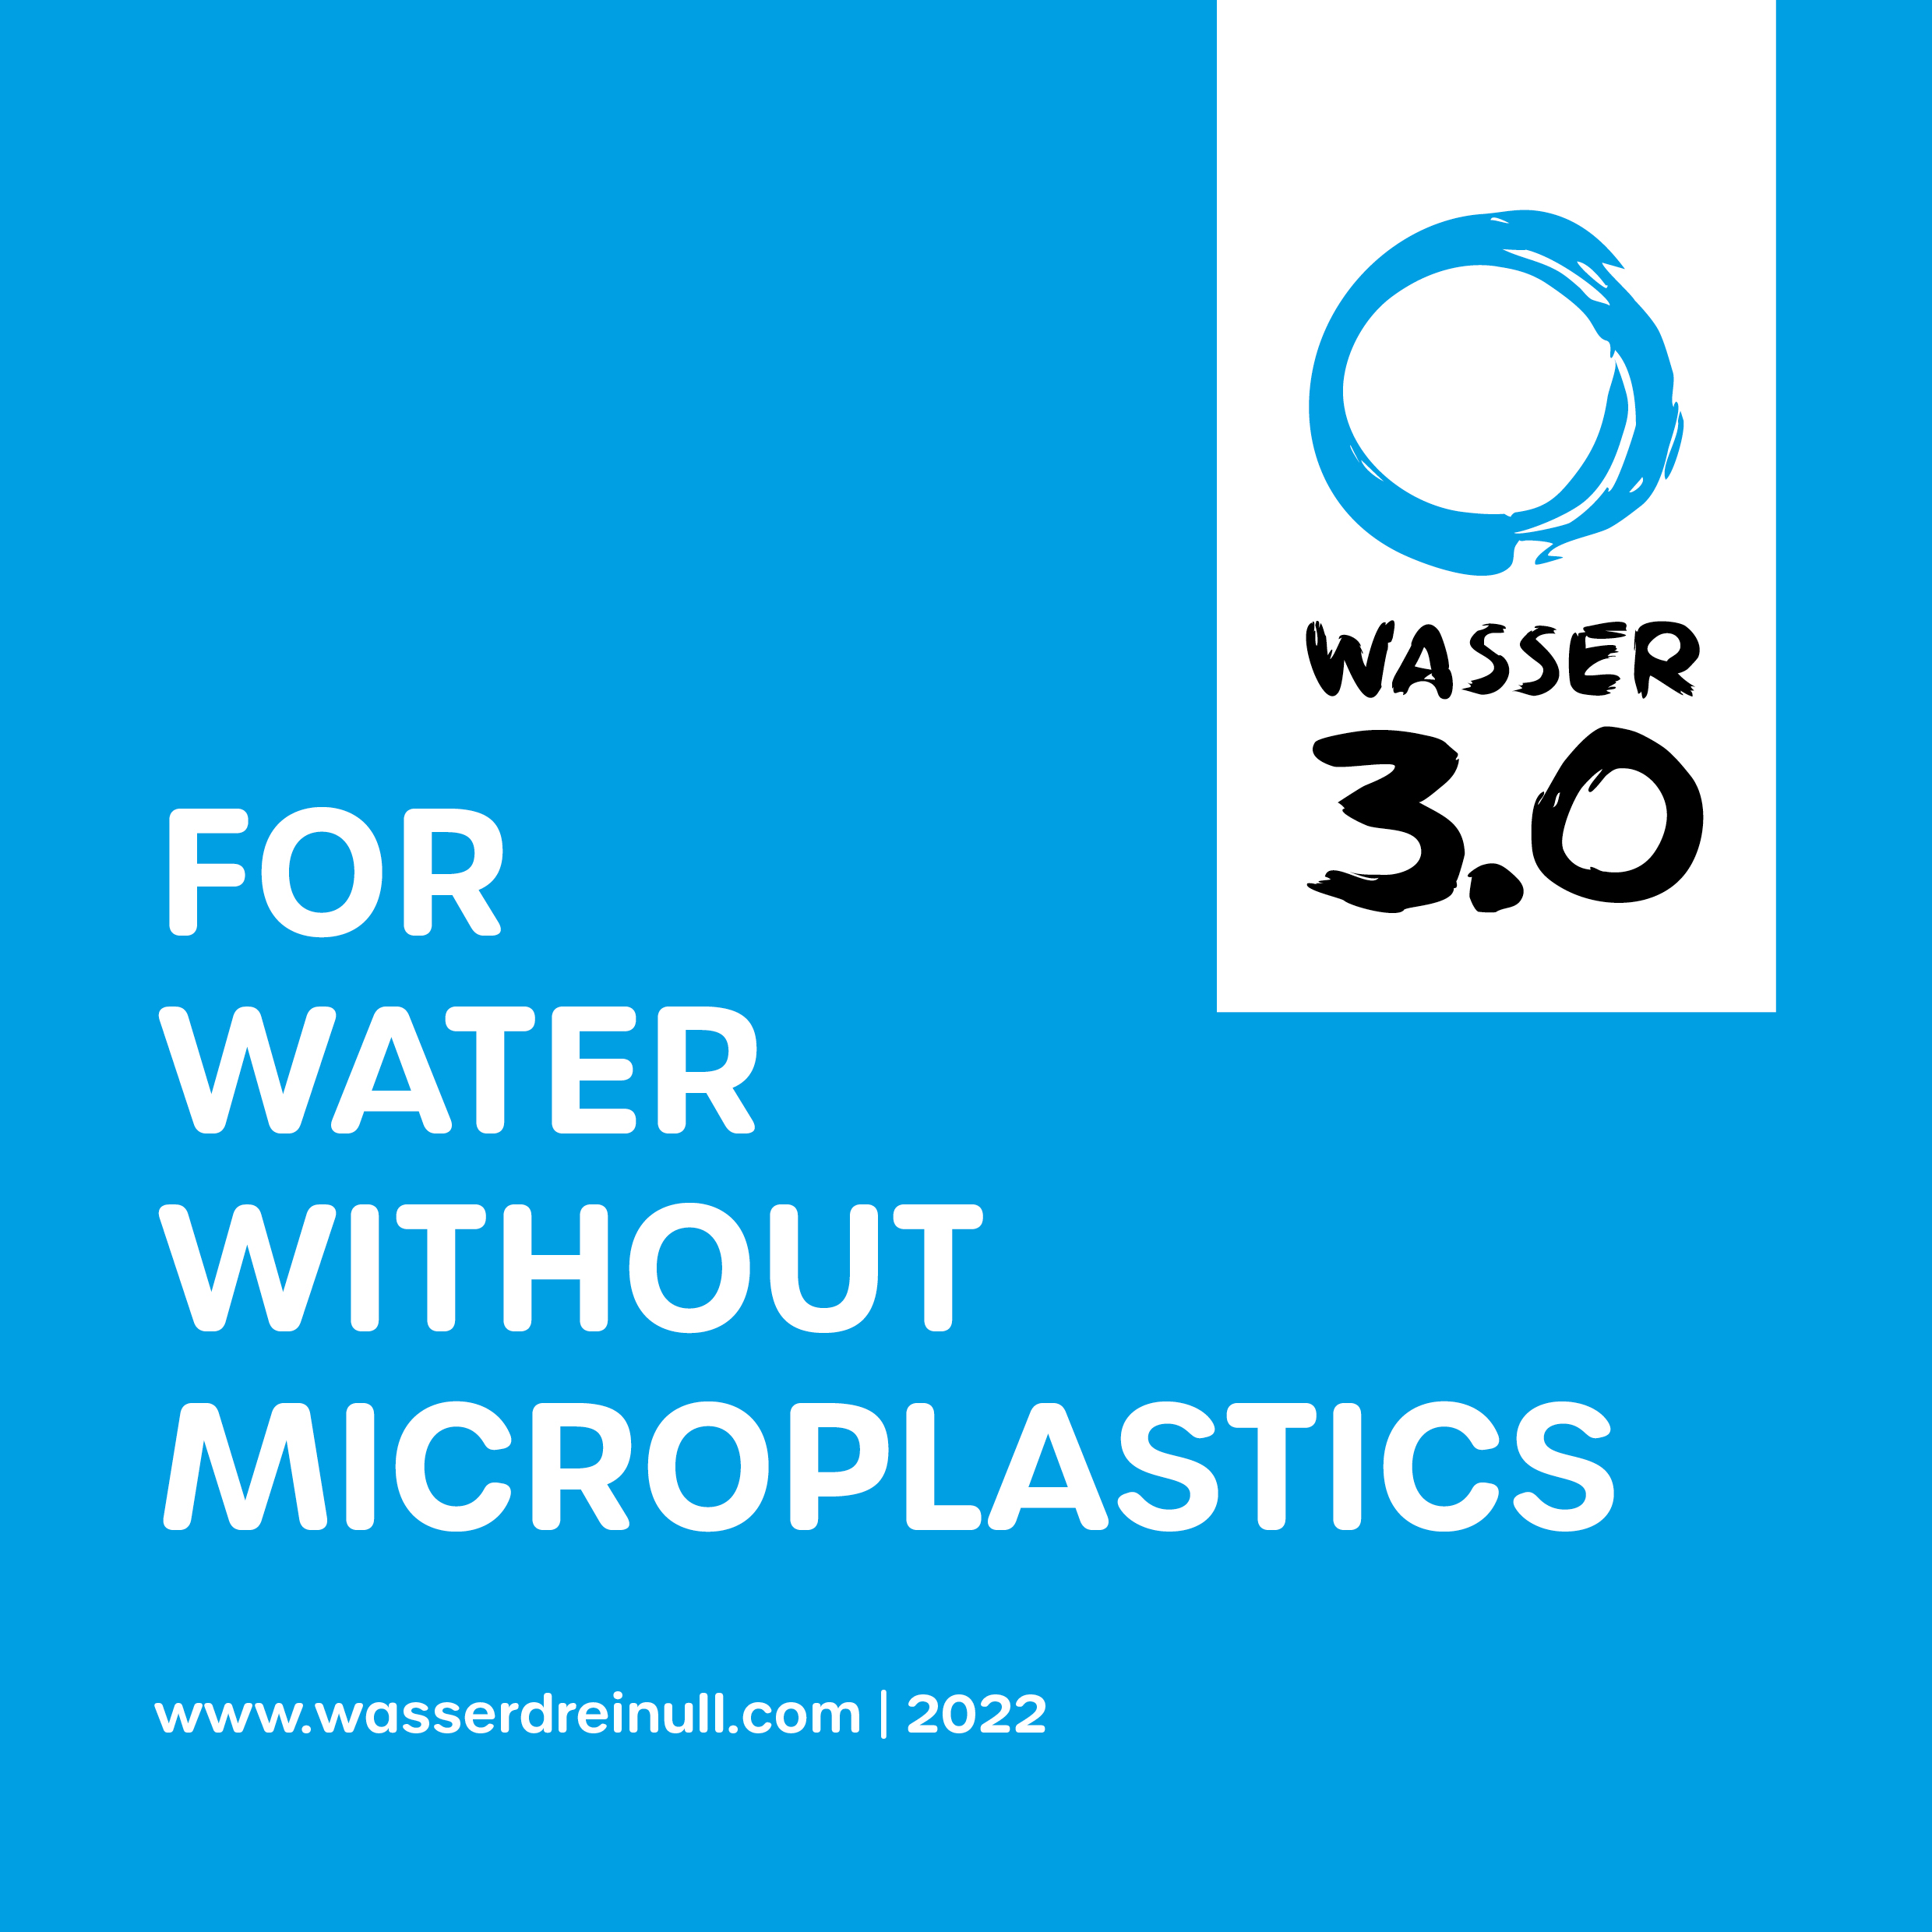 Wasser 3.0 - Company description (english version)